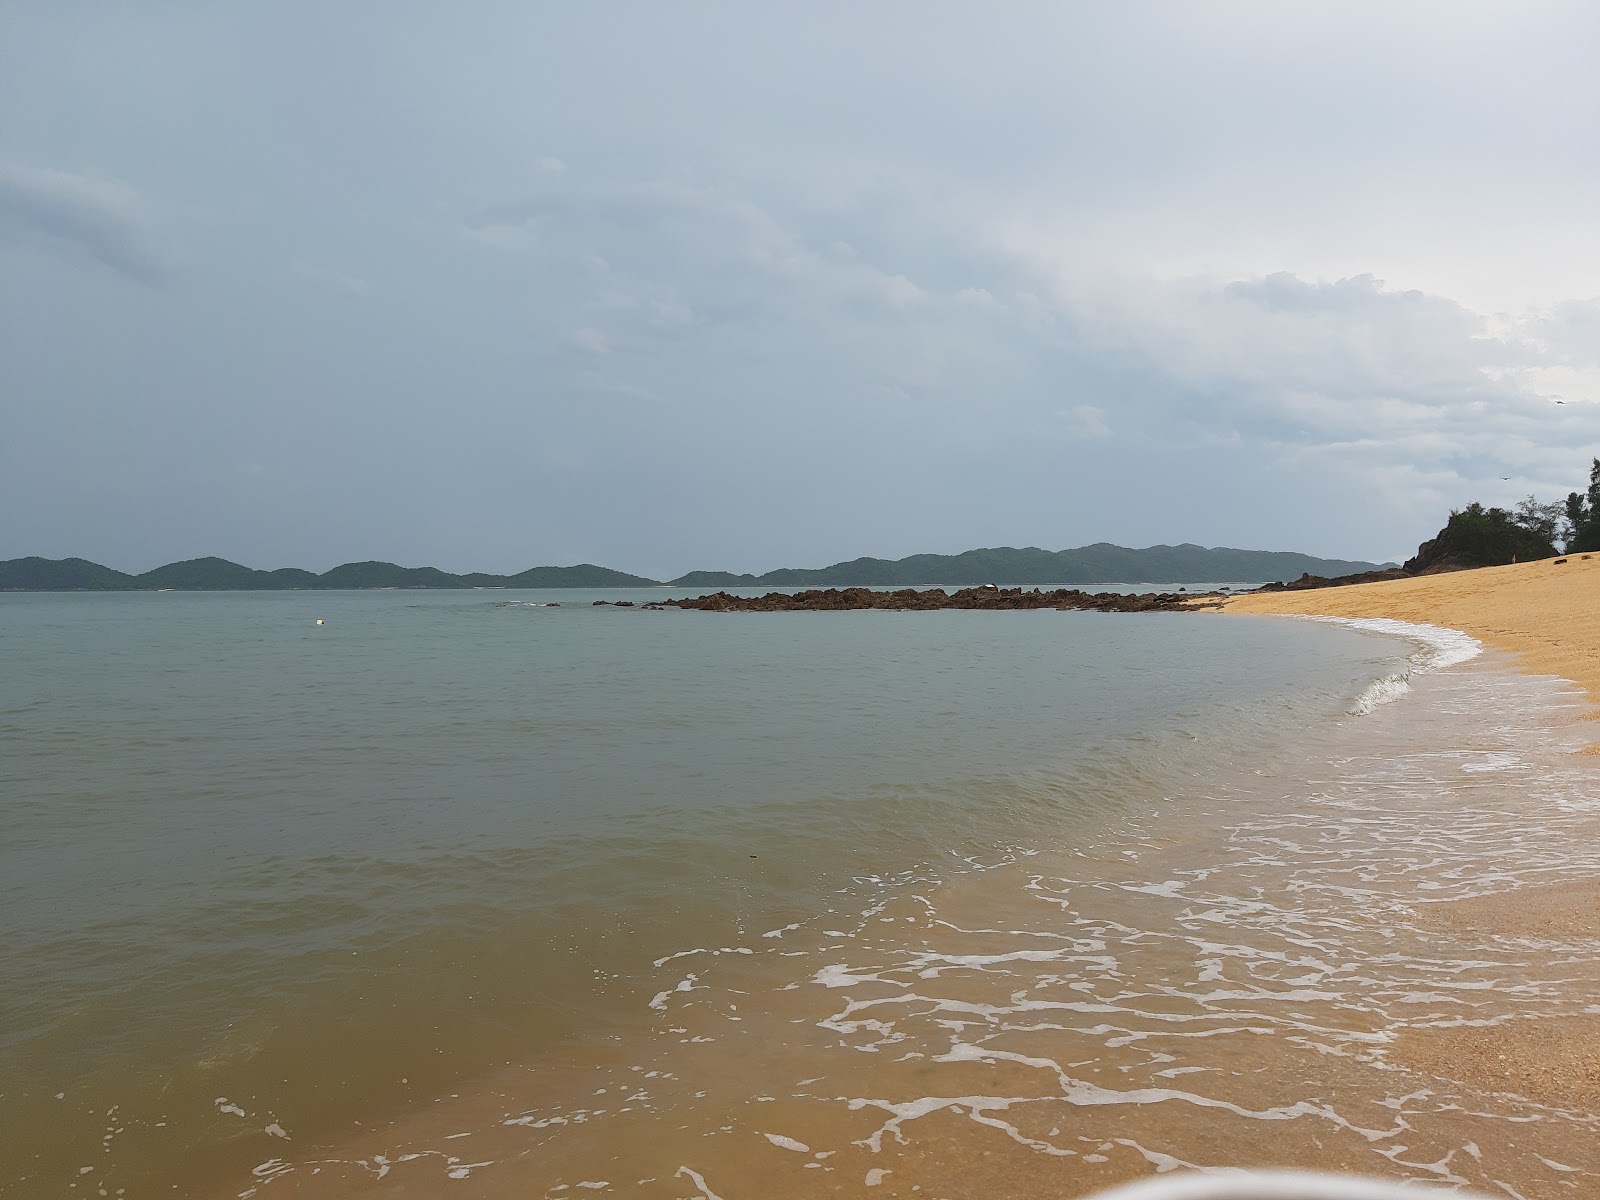 Fotografija Cai Chien beach priljubljeno mesto med poznavalci sprostitve